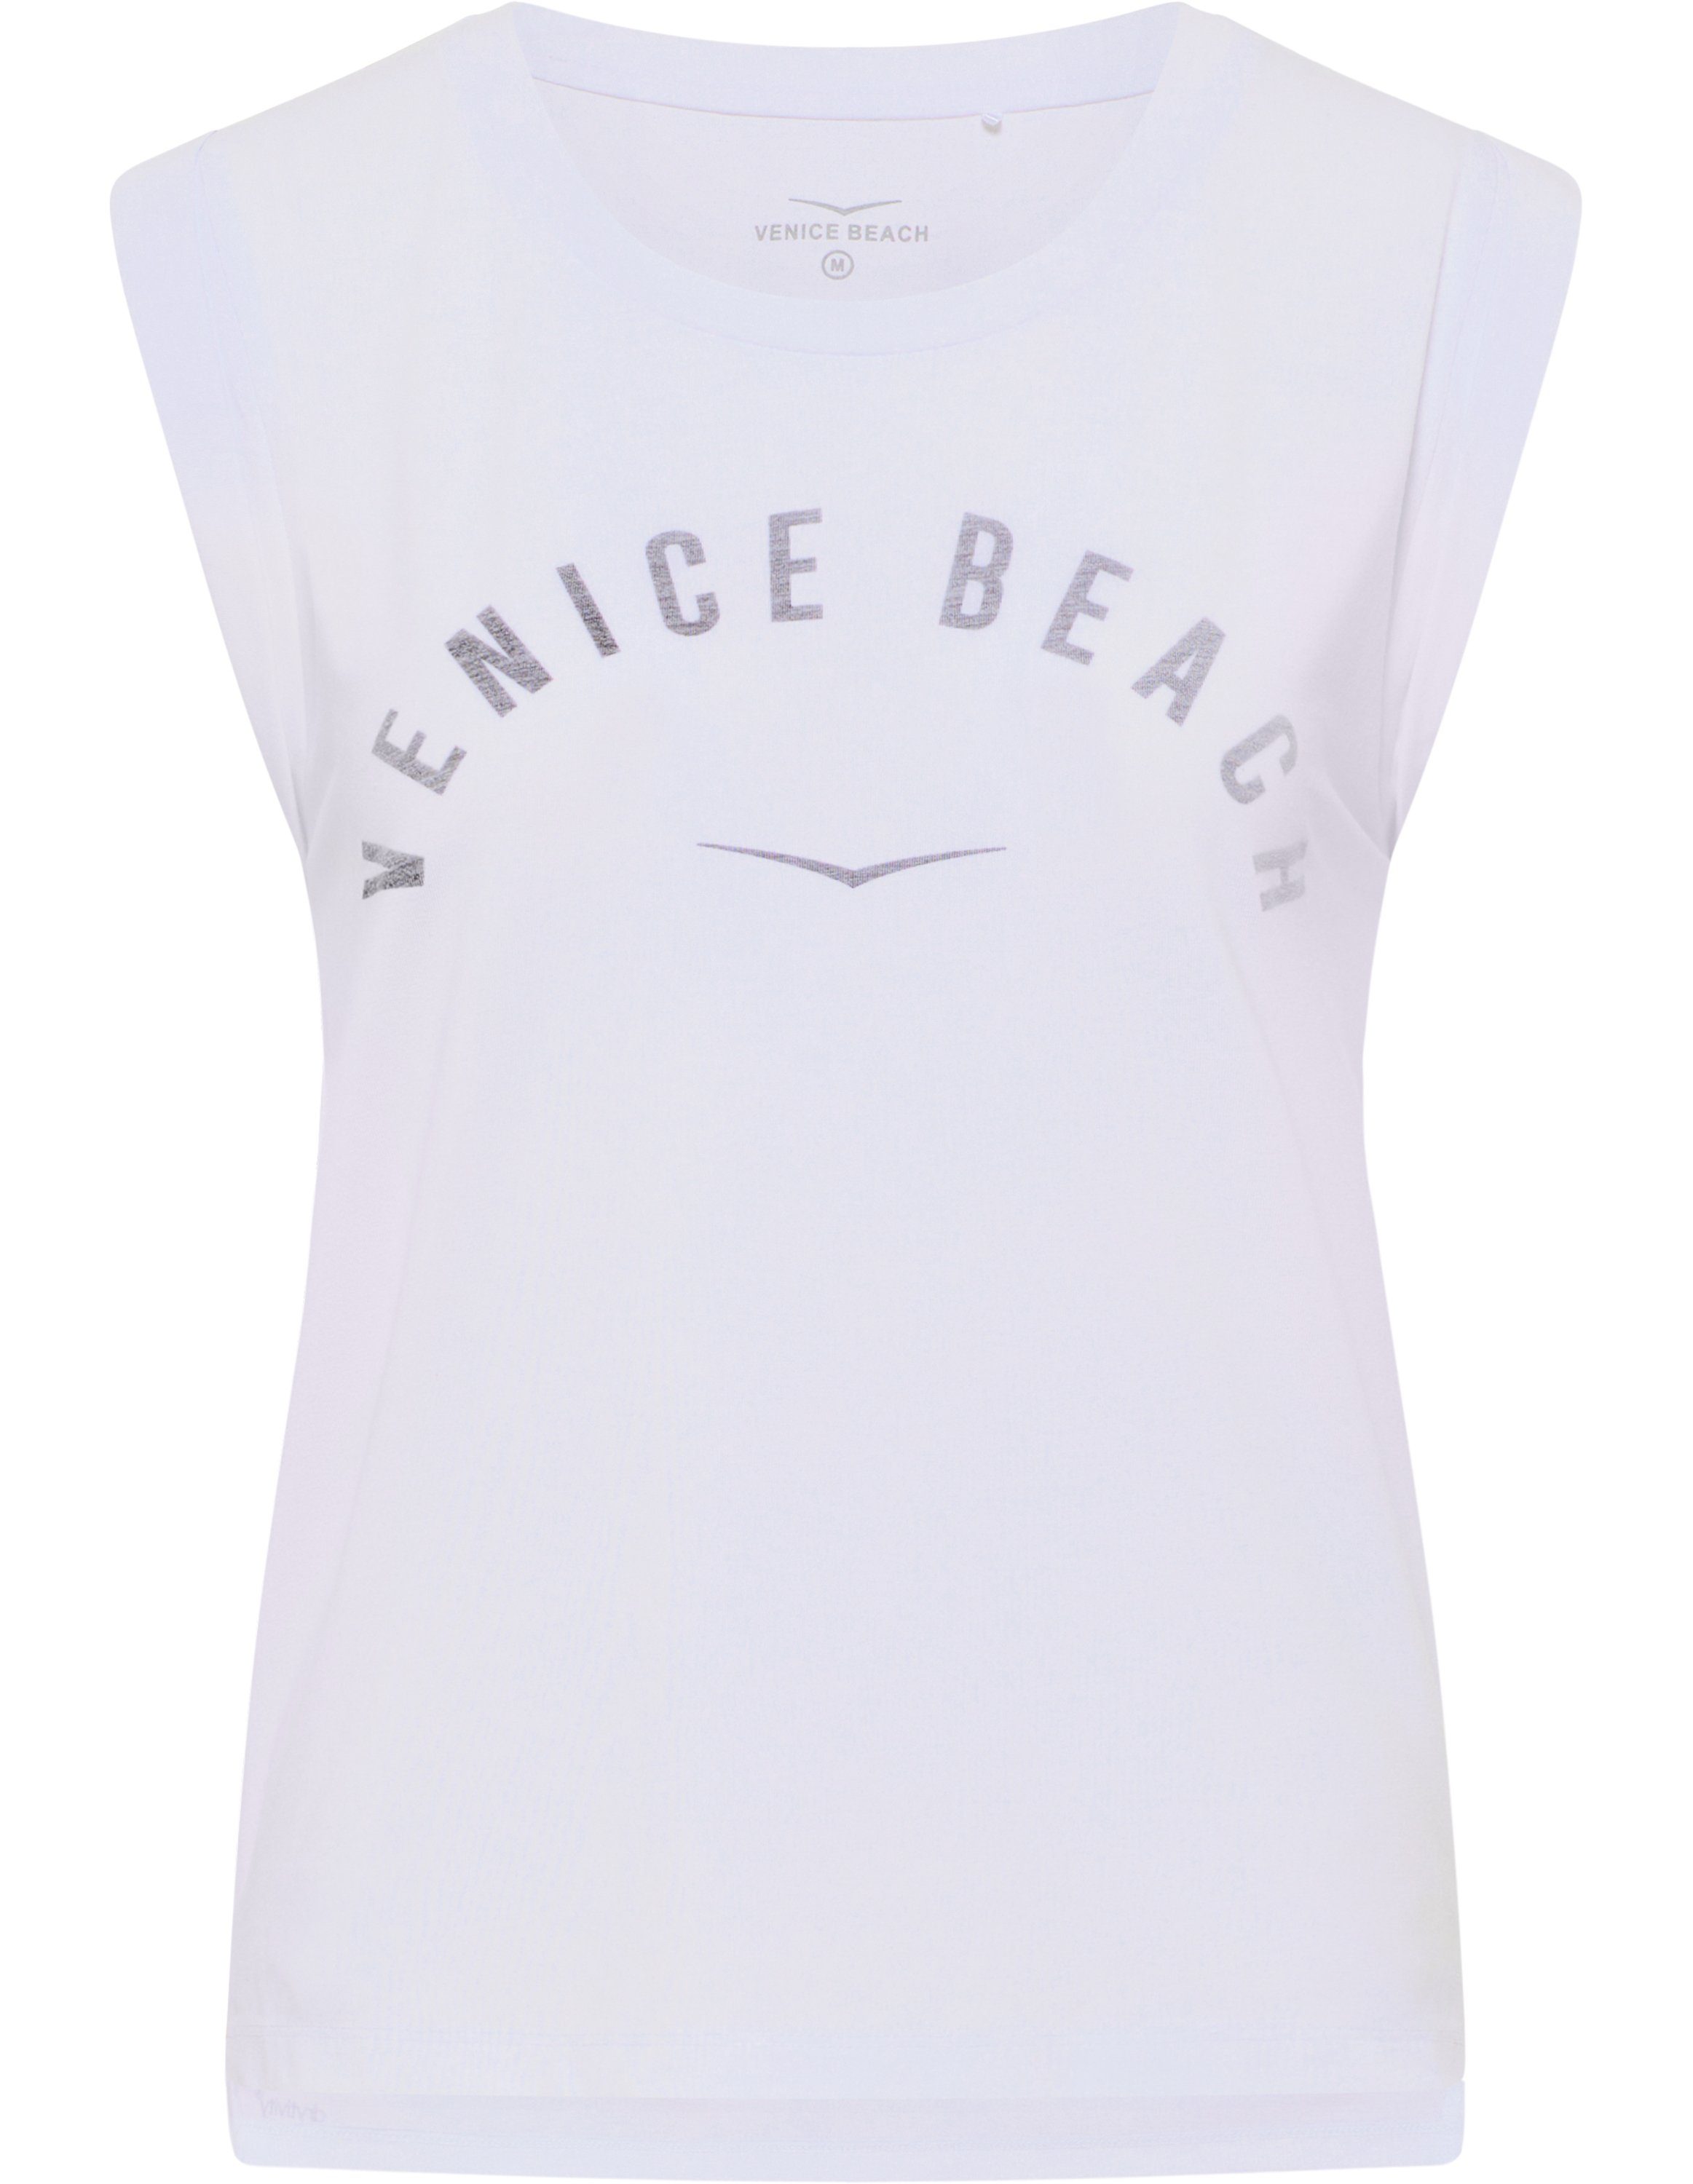 Beach T-Shirt T-Shirt Chayanne Venice white VB